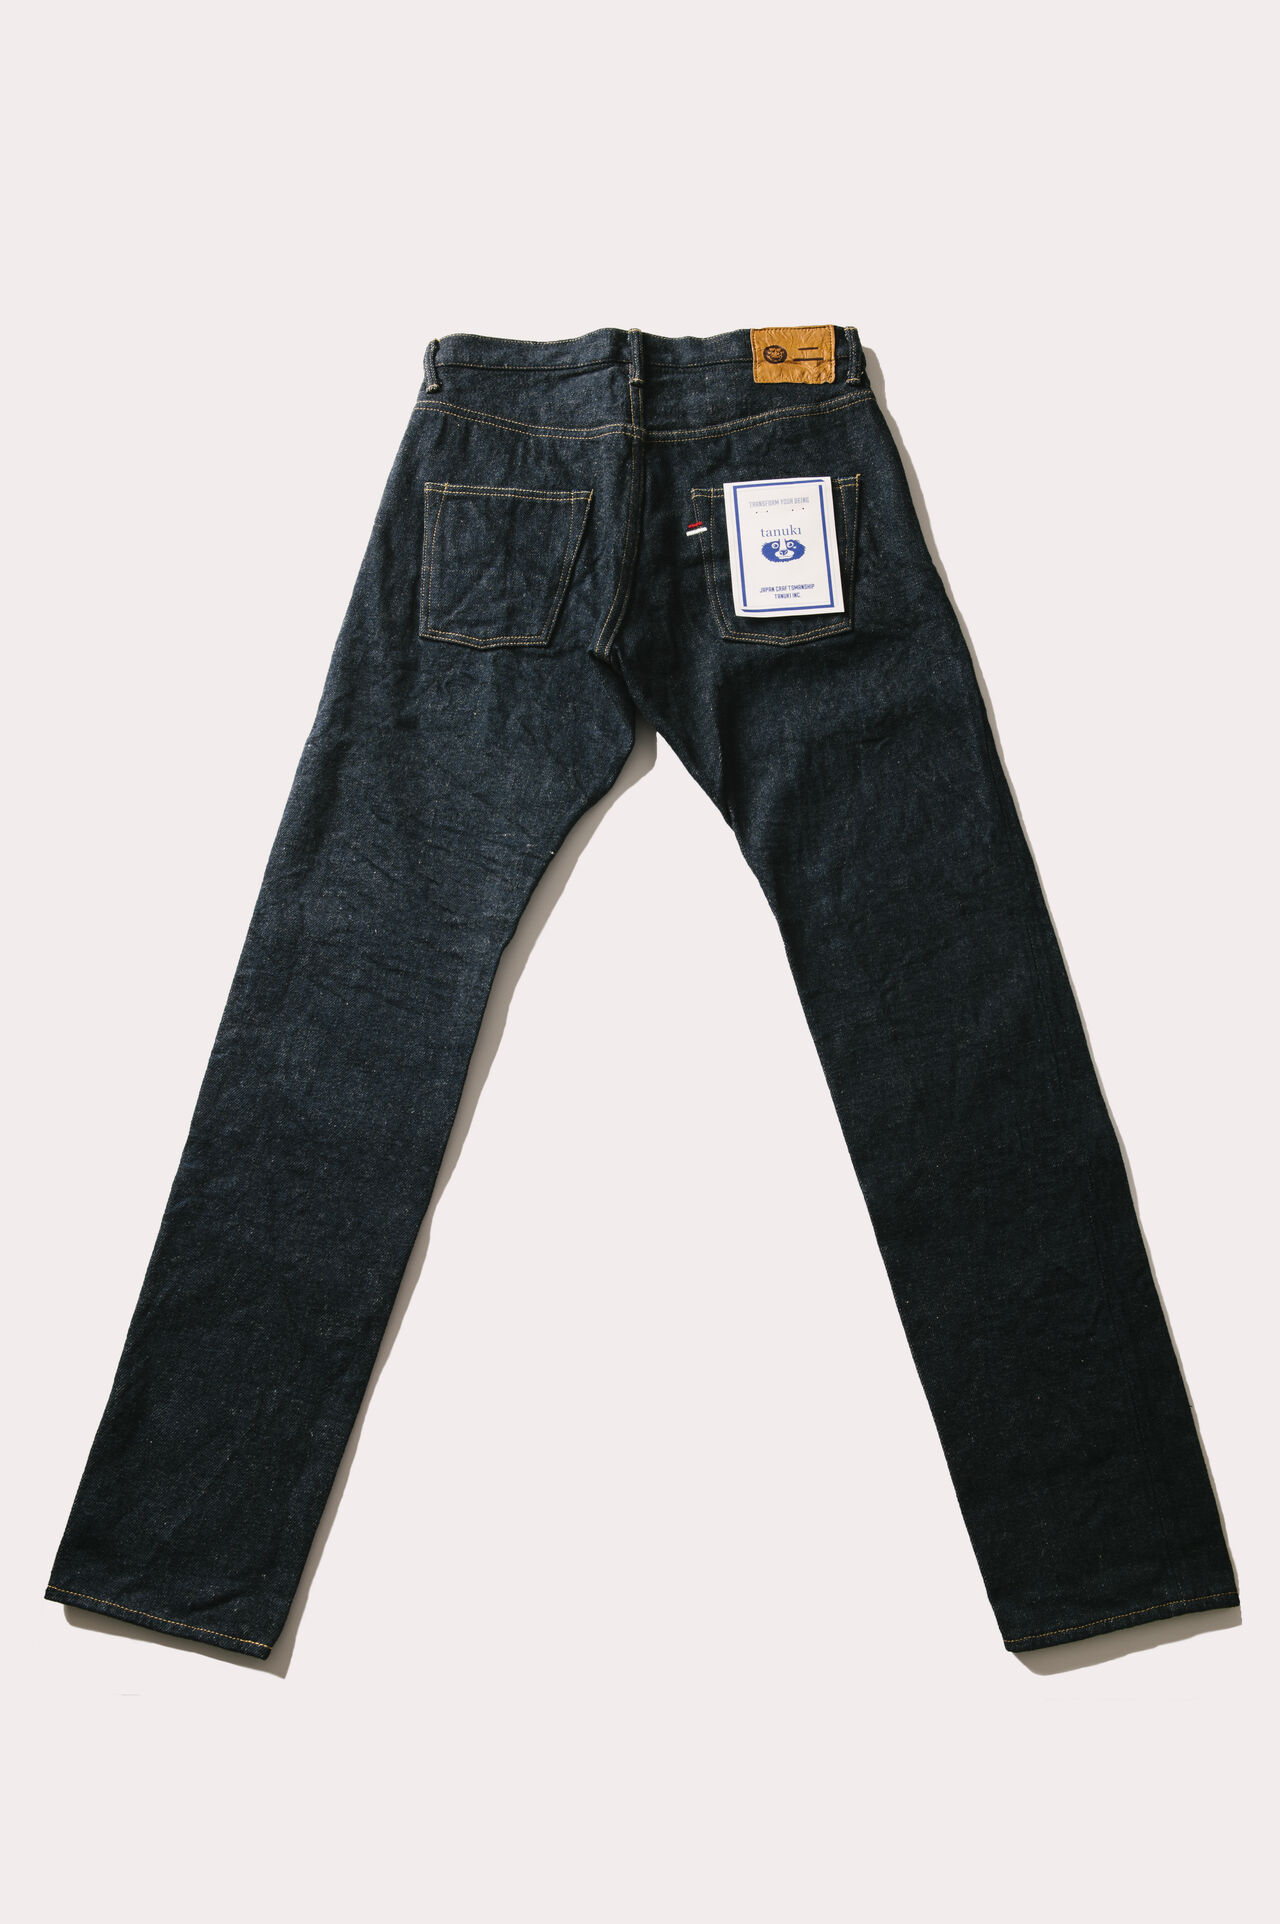 OTHT ONI x TANUKI Collaboration 21.5oz Secret Denim High Rise Tapered Jeans,, large image number 6